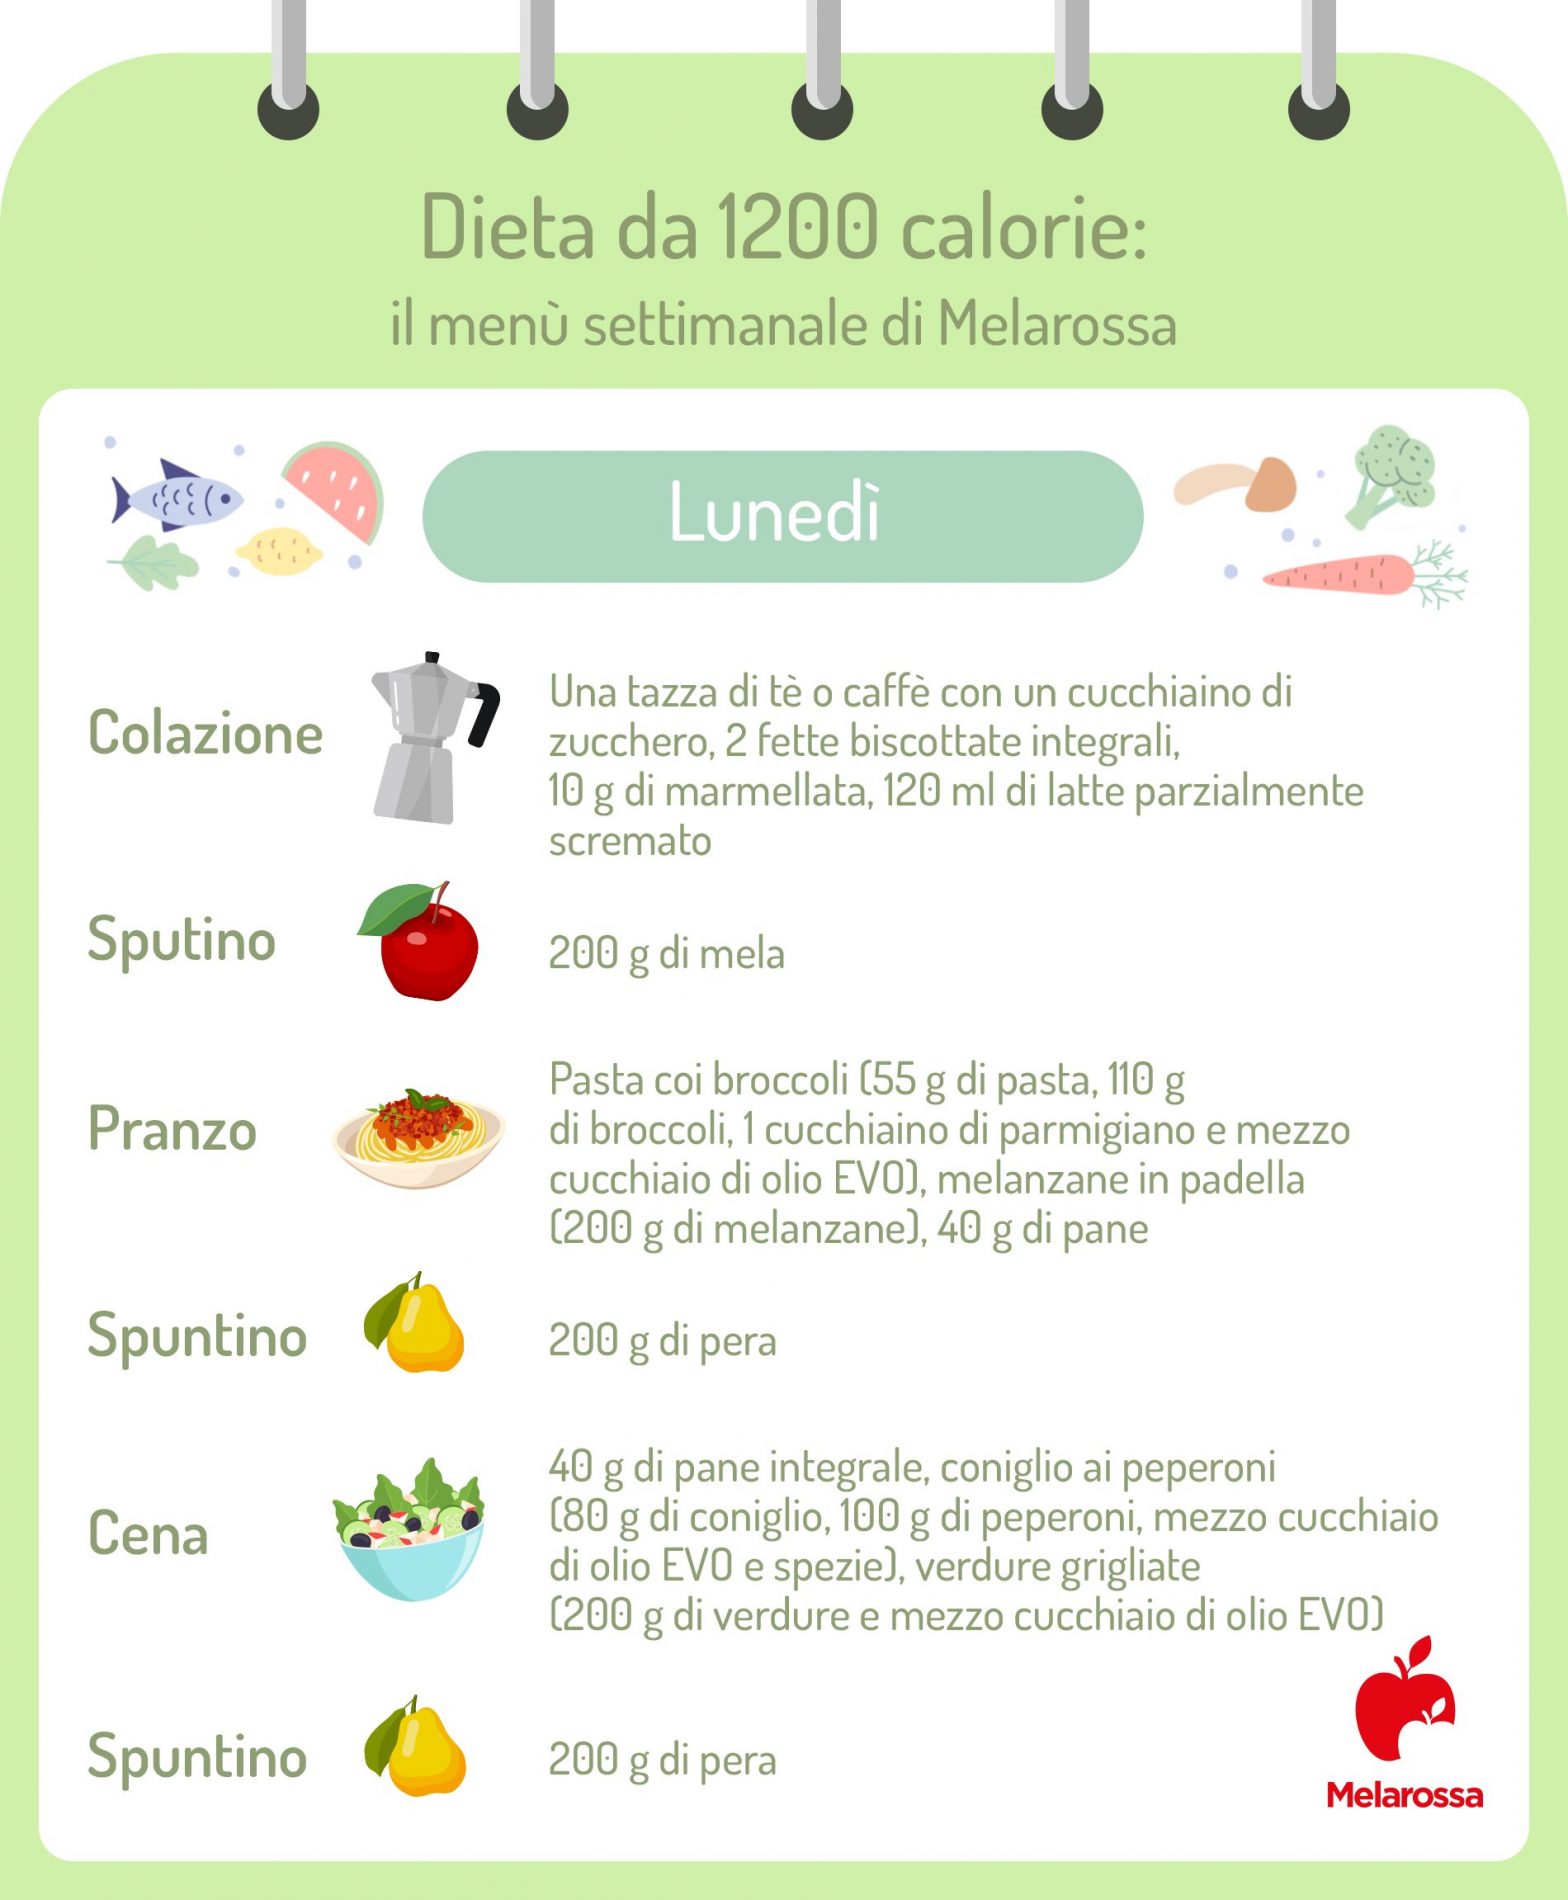 dieta 1200 calorie menu settimanale: lunedì